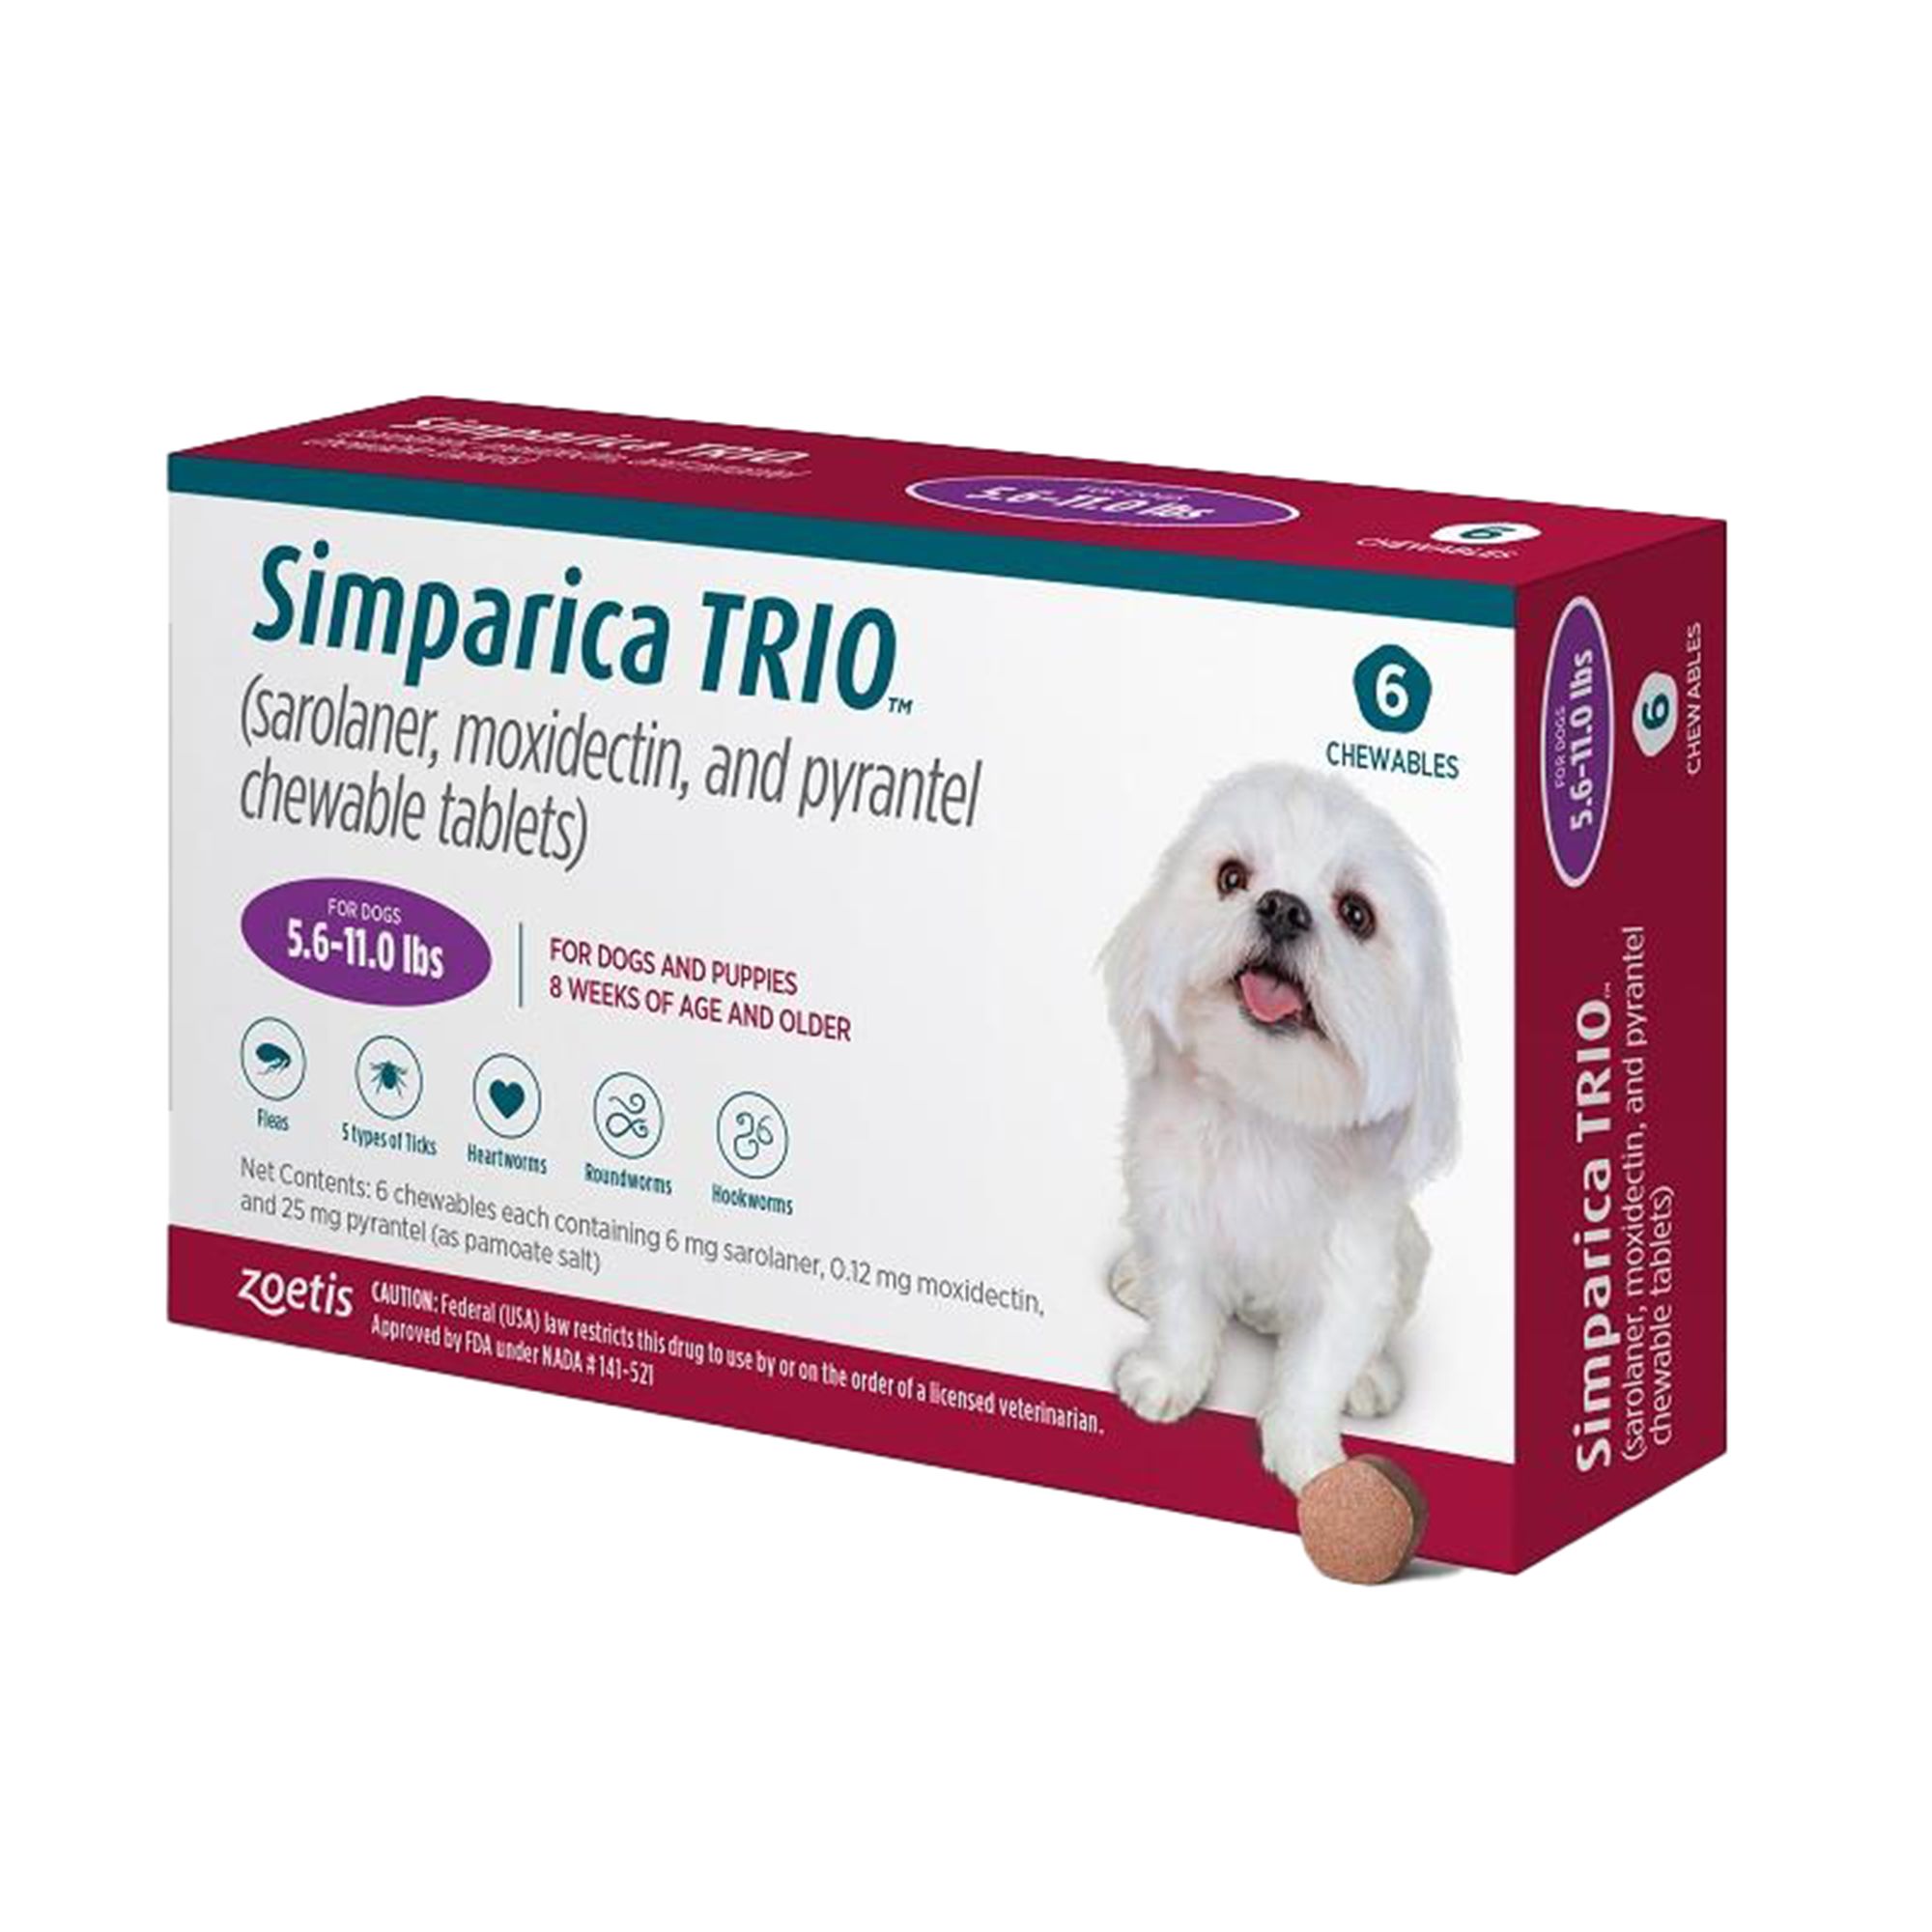 Симпарика таблетка для собак купить в екатеринбурге. Simparica Trio для собак. Симпарика трио таблетка для собак. Симпарика трио 6 мг, 2,5-5 кг для собак. Симпарика 1 таблетка для собак.